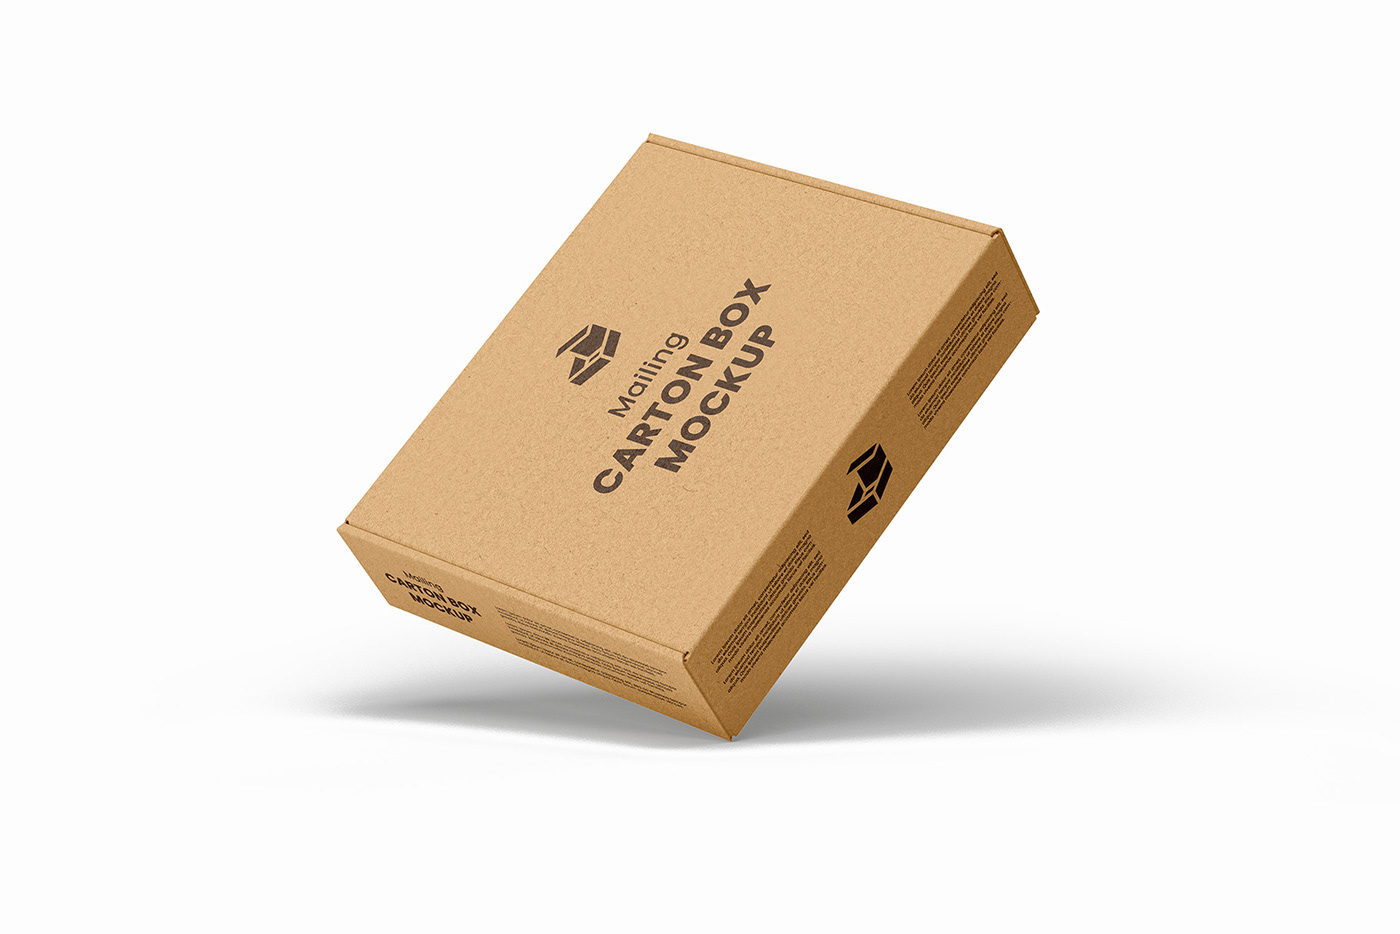 box carton deliver delivery mailing mock-up Mockup post send